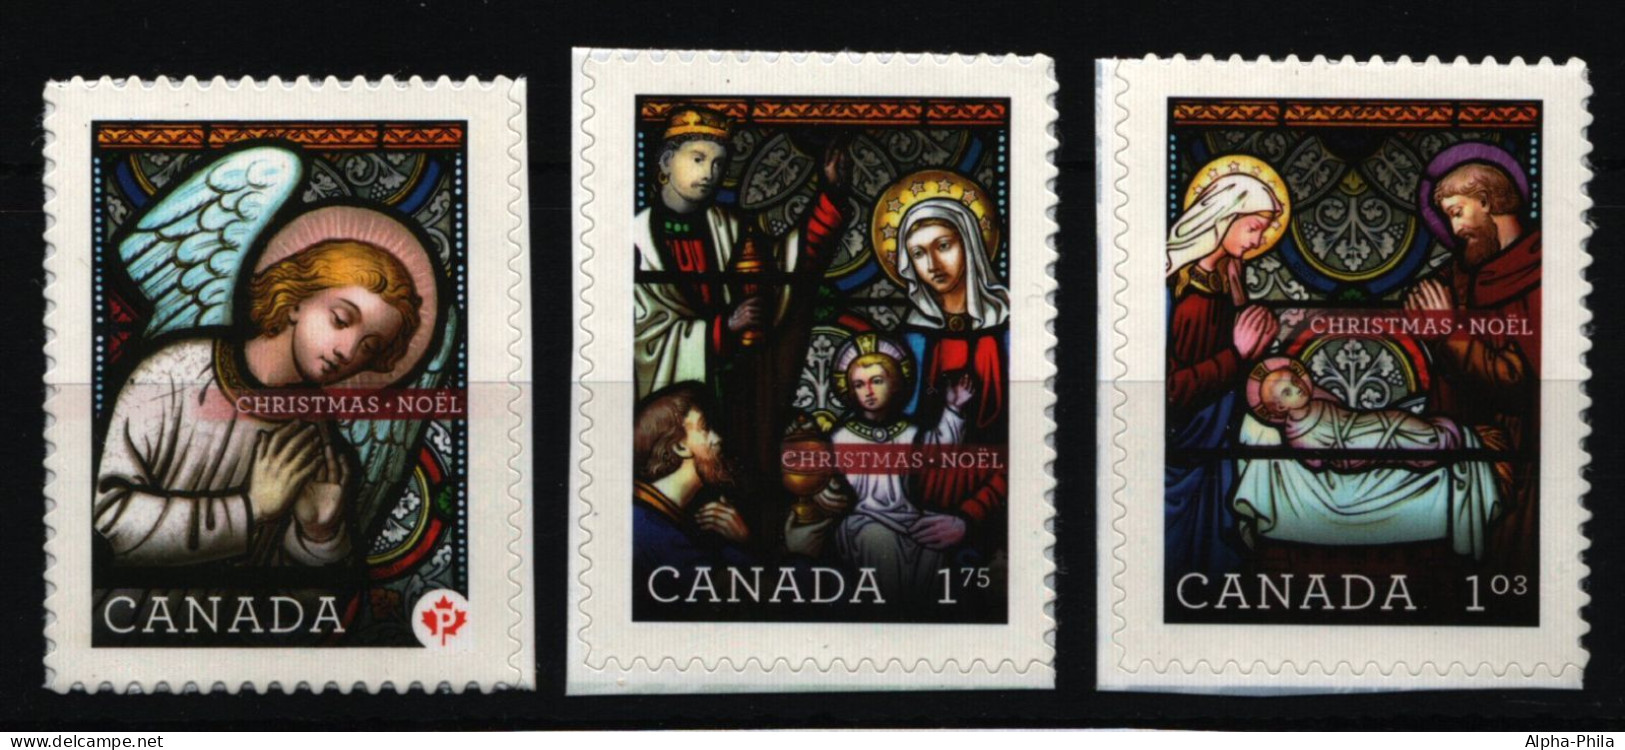 Kanada 2011 - Mi-Nr. 2771-2773 ** - MNH - Weihnachten / X-mas - Unused Stamps